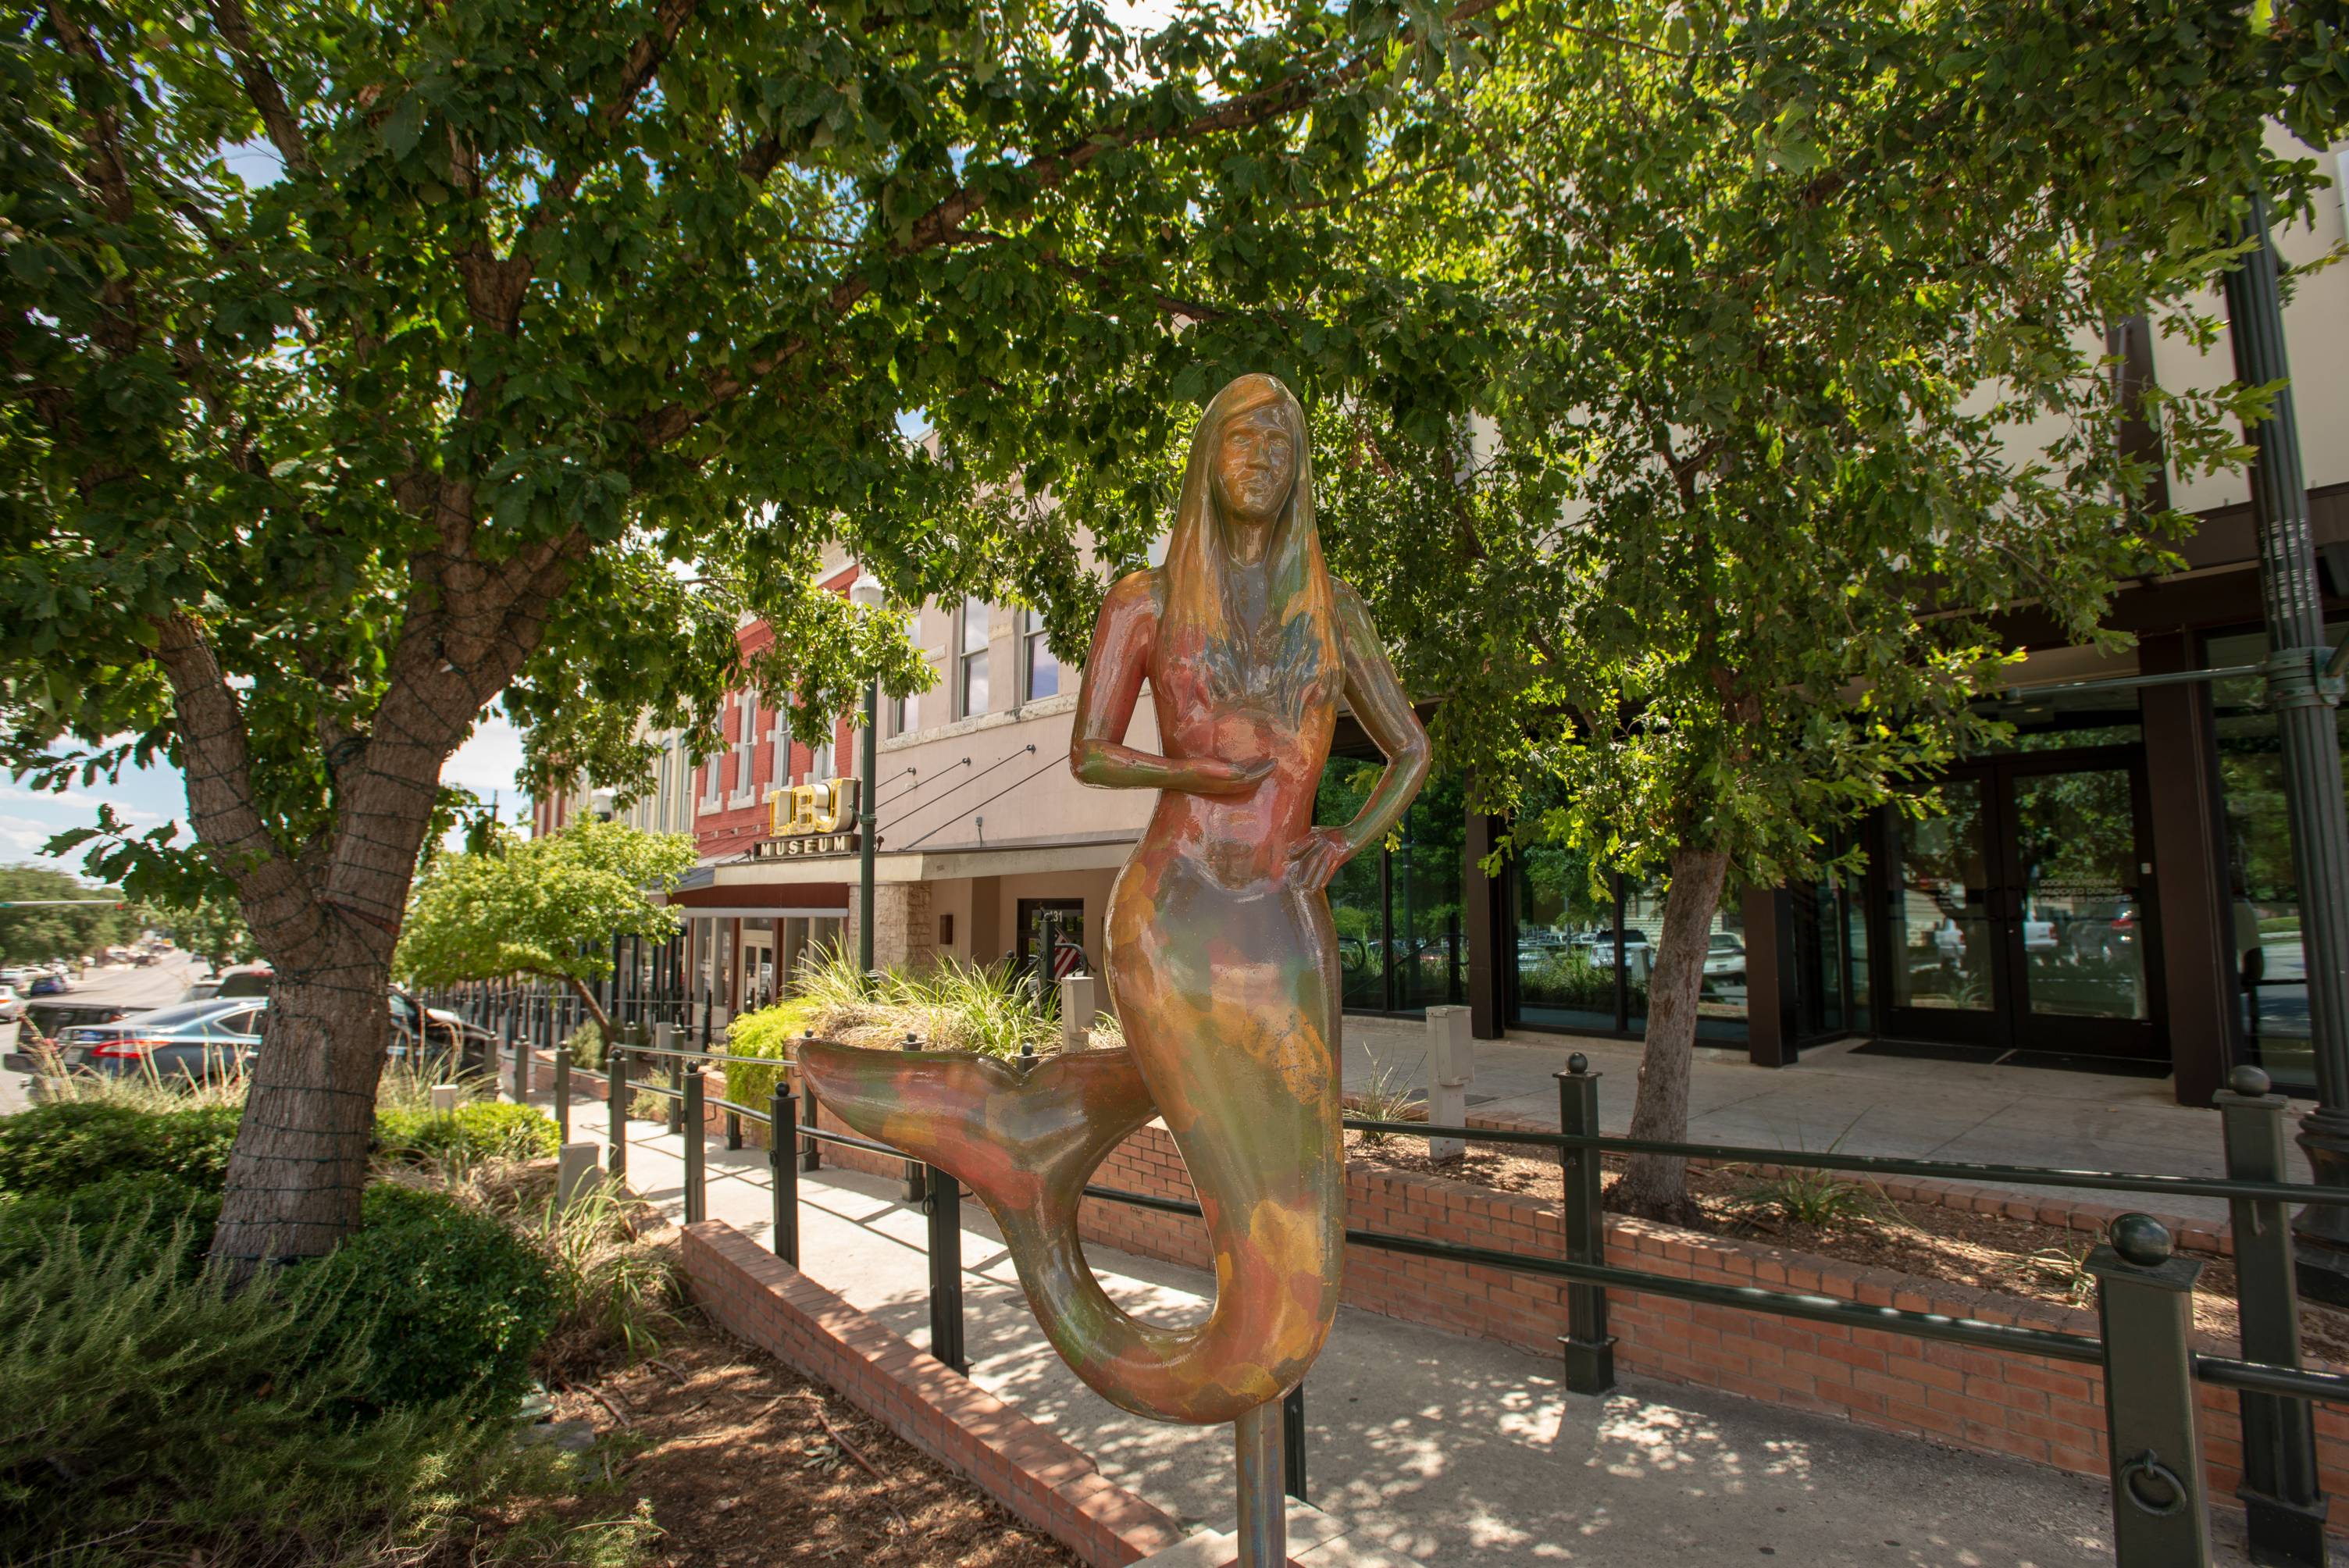 San Marcos Mermaid statue